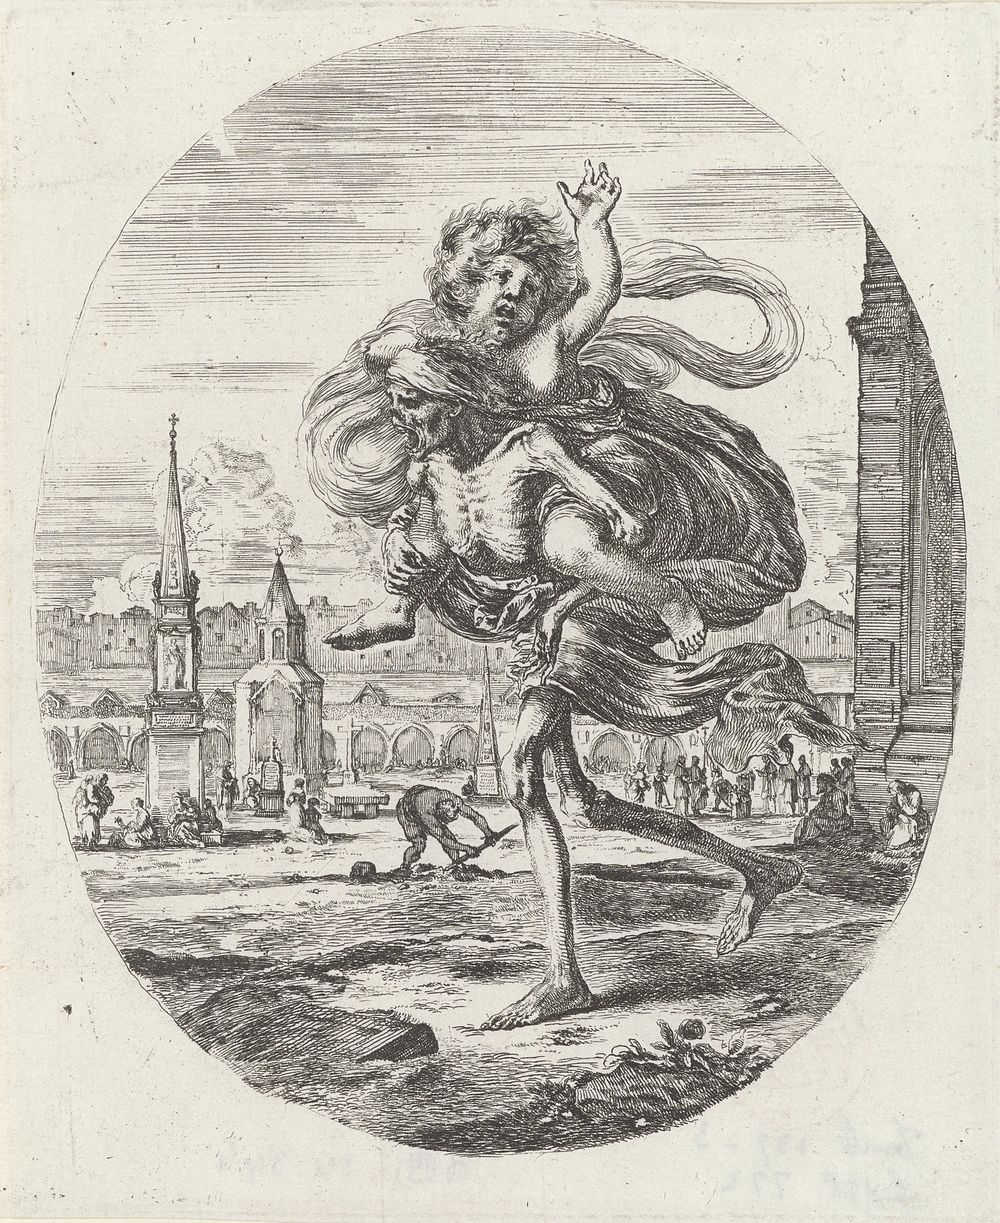 De Dood met kind op de rug (1620 - 1664) by Stefano della Bella